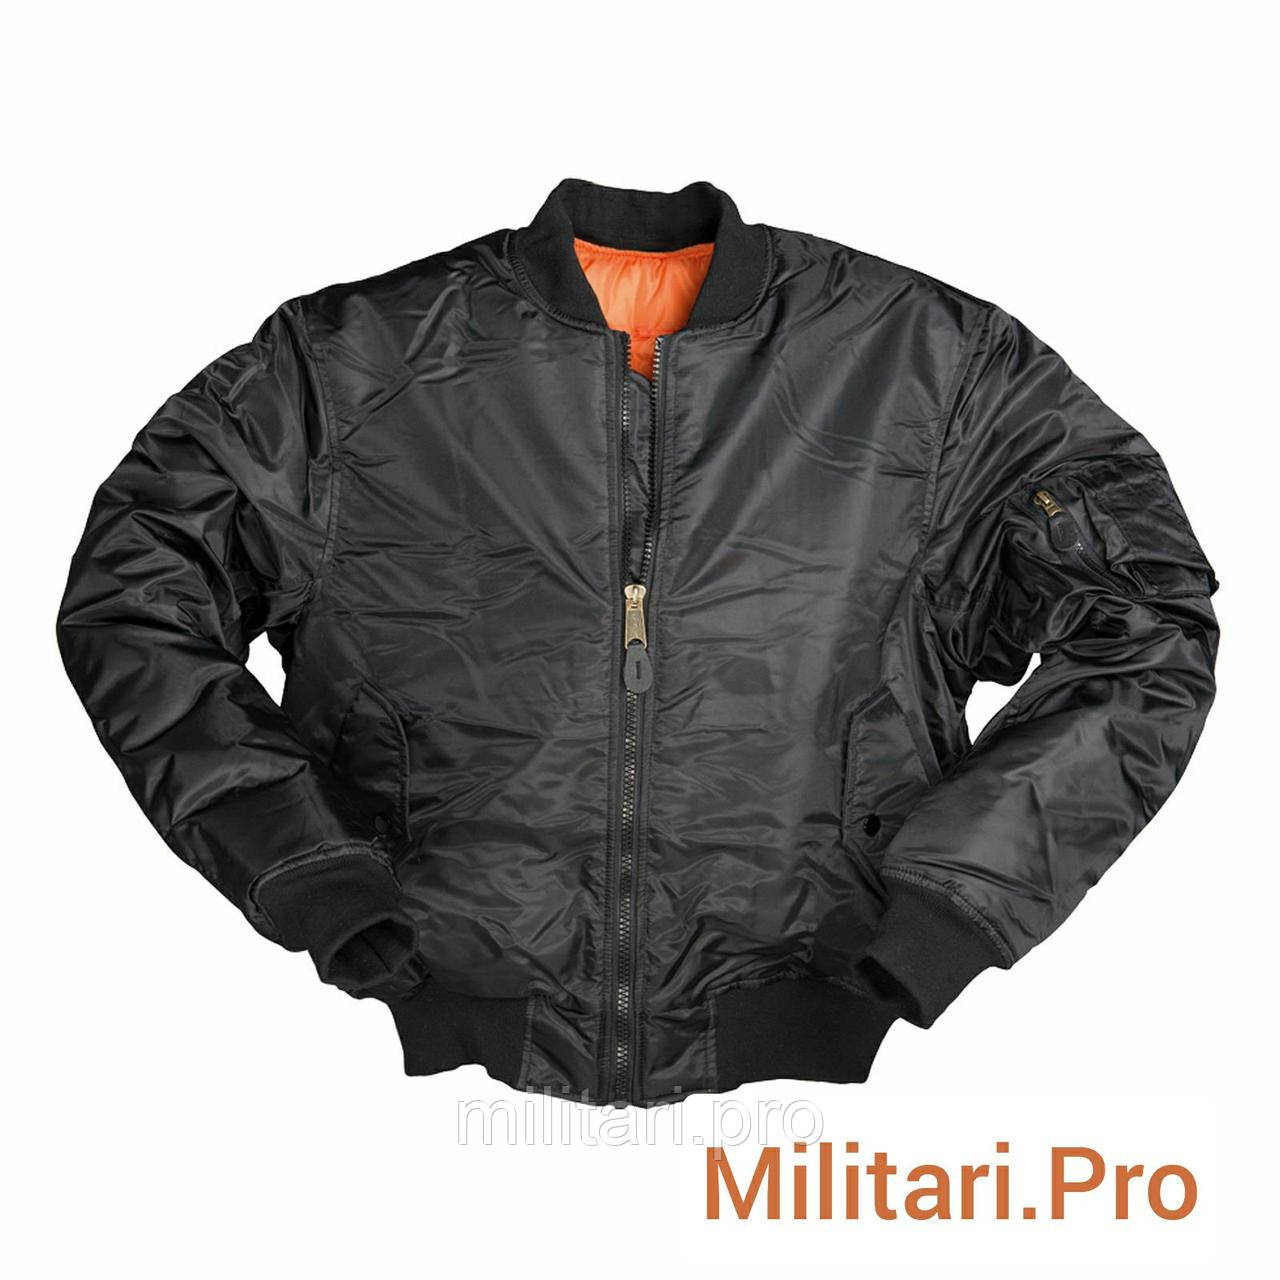 Купити - Куртка бомбер (літна) MA-1 чорний, Mil-Tec. Розміри: М;L; XL; XXL; XXXL. Німеччина. Art. Nr:10403002